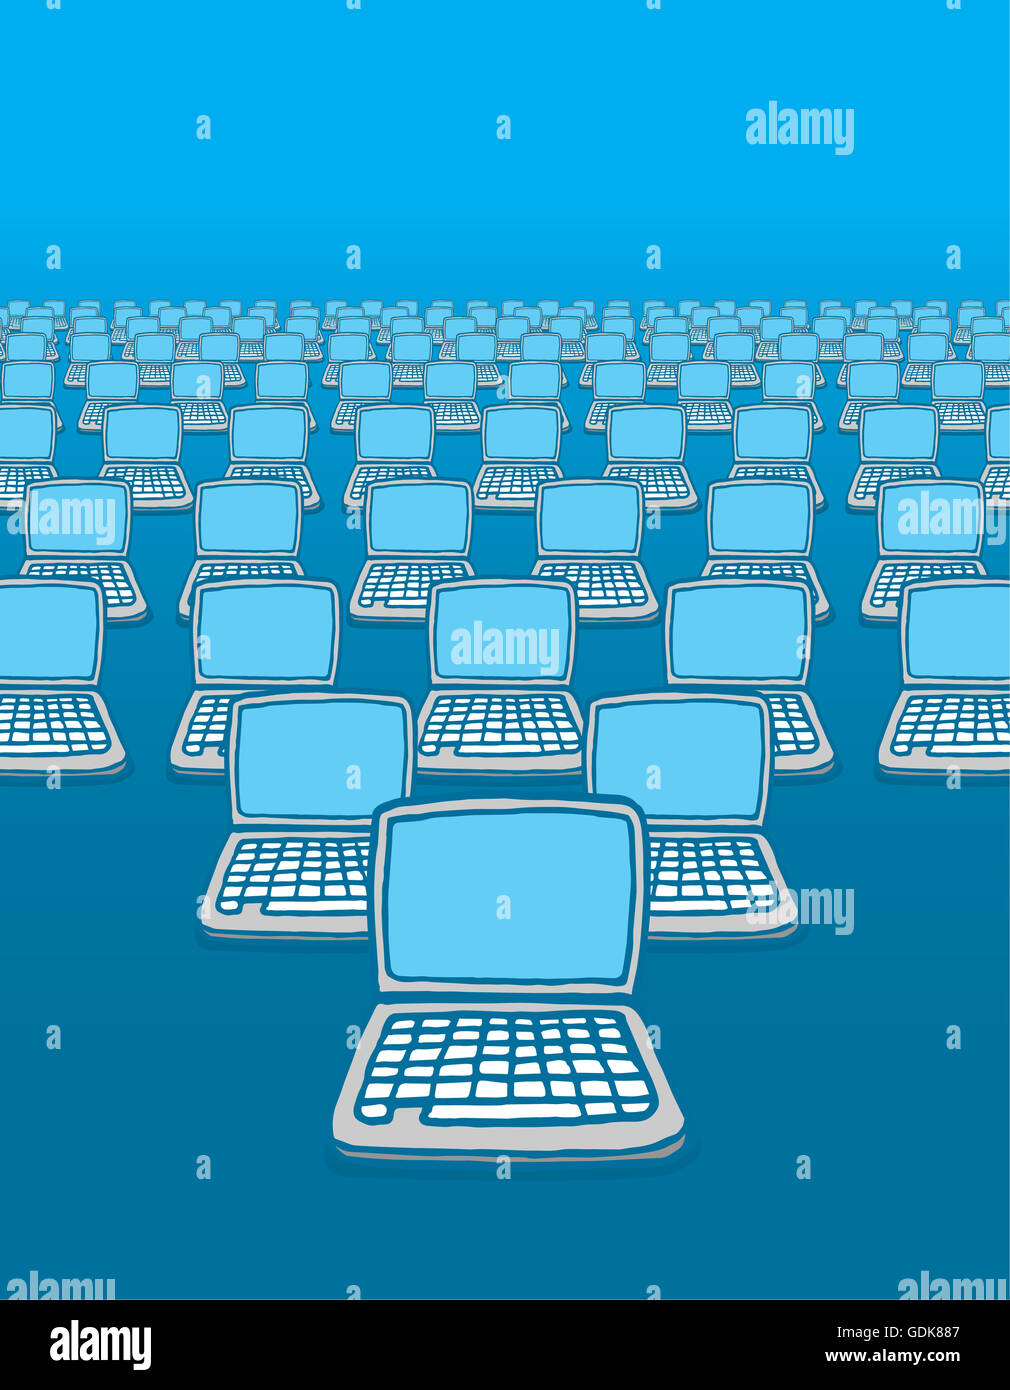 Cartoon-Illustration der viele Computer mit dem Internet verbunden. Stockfoto